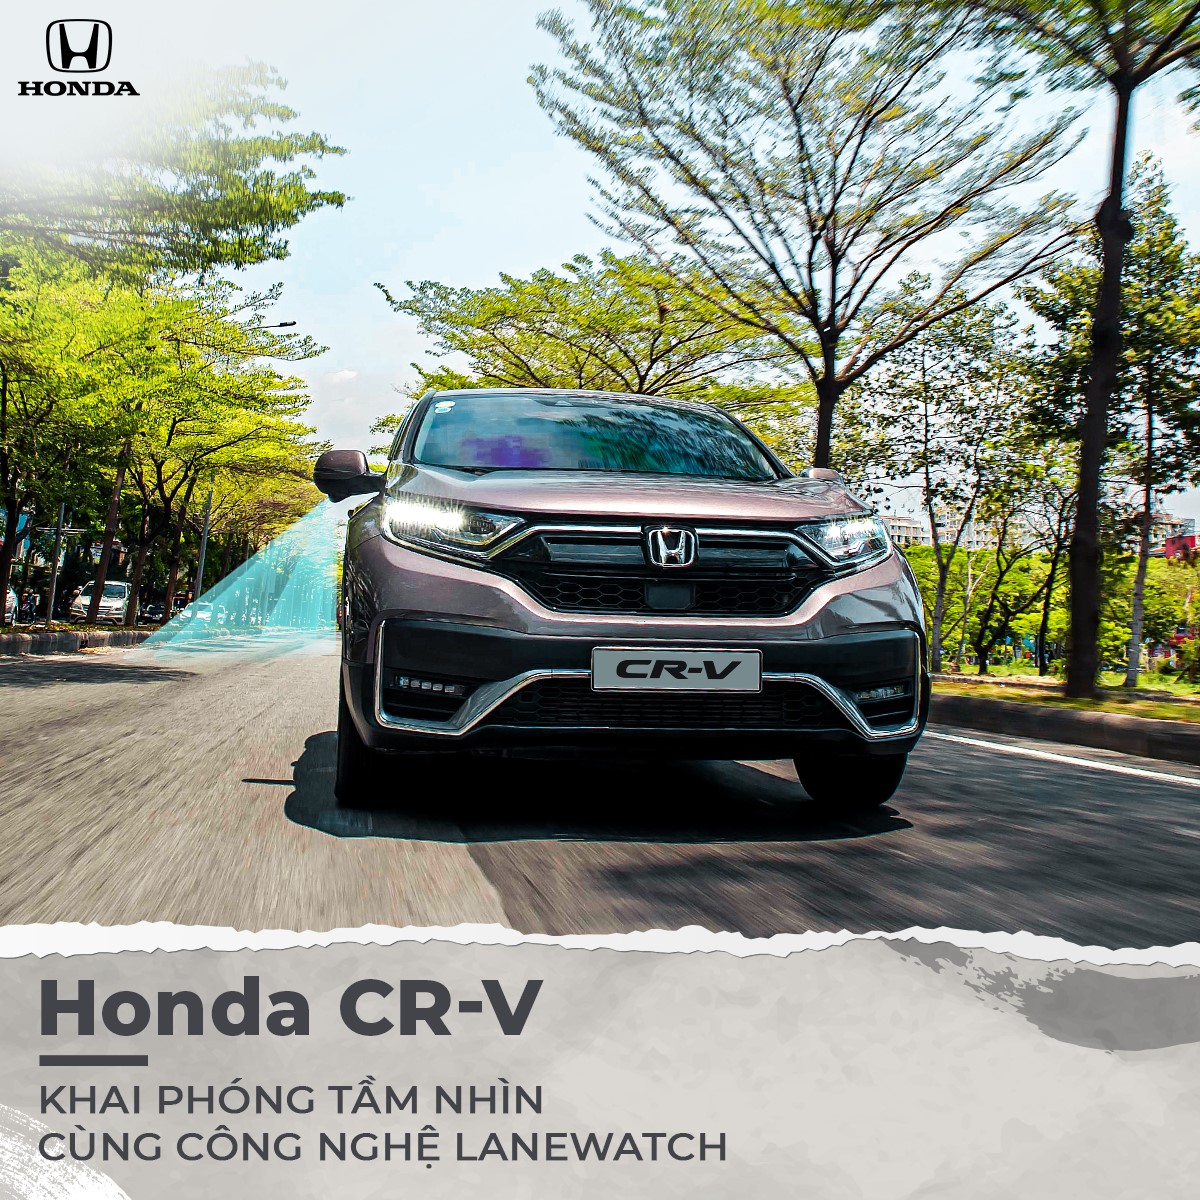 Honda CR-V | Khai phóng tầm nhìn cùng công nghệ Lanewatch